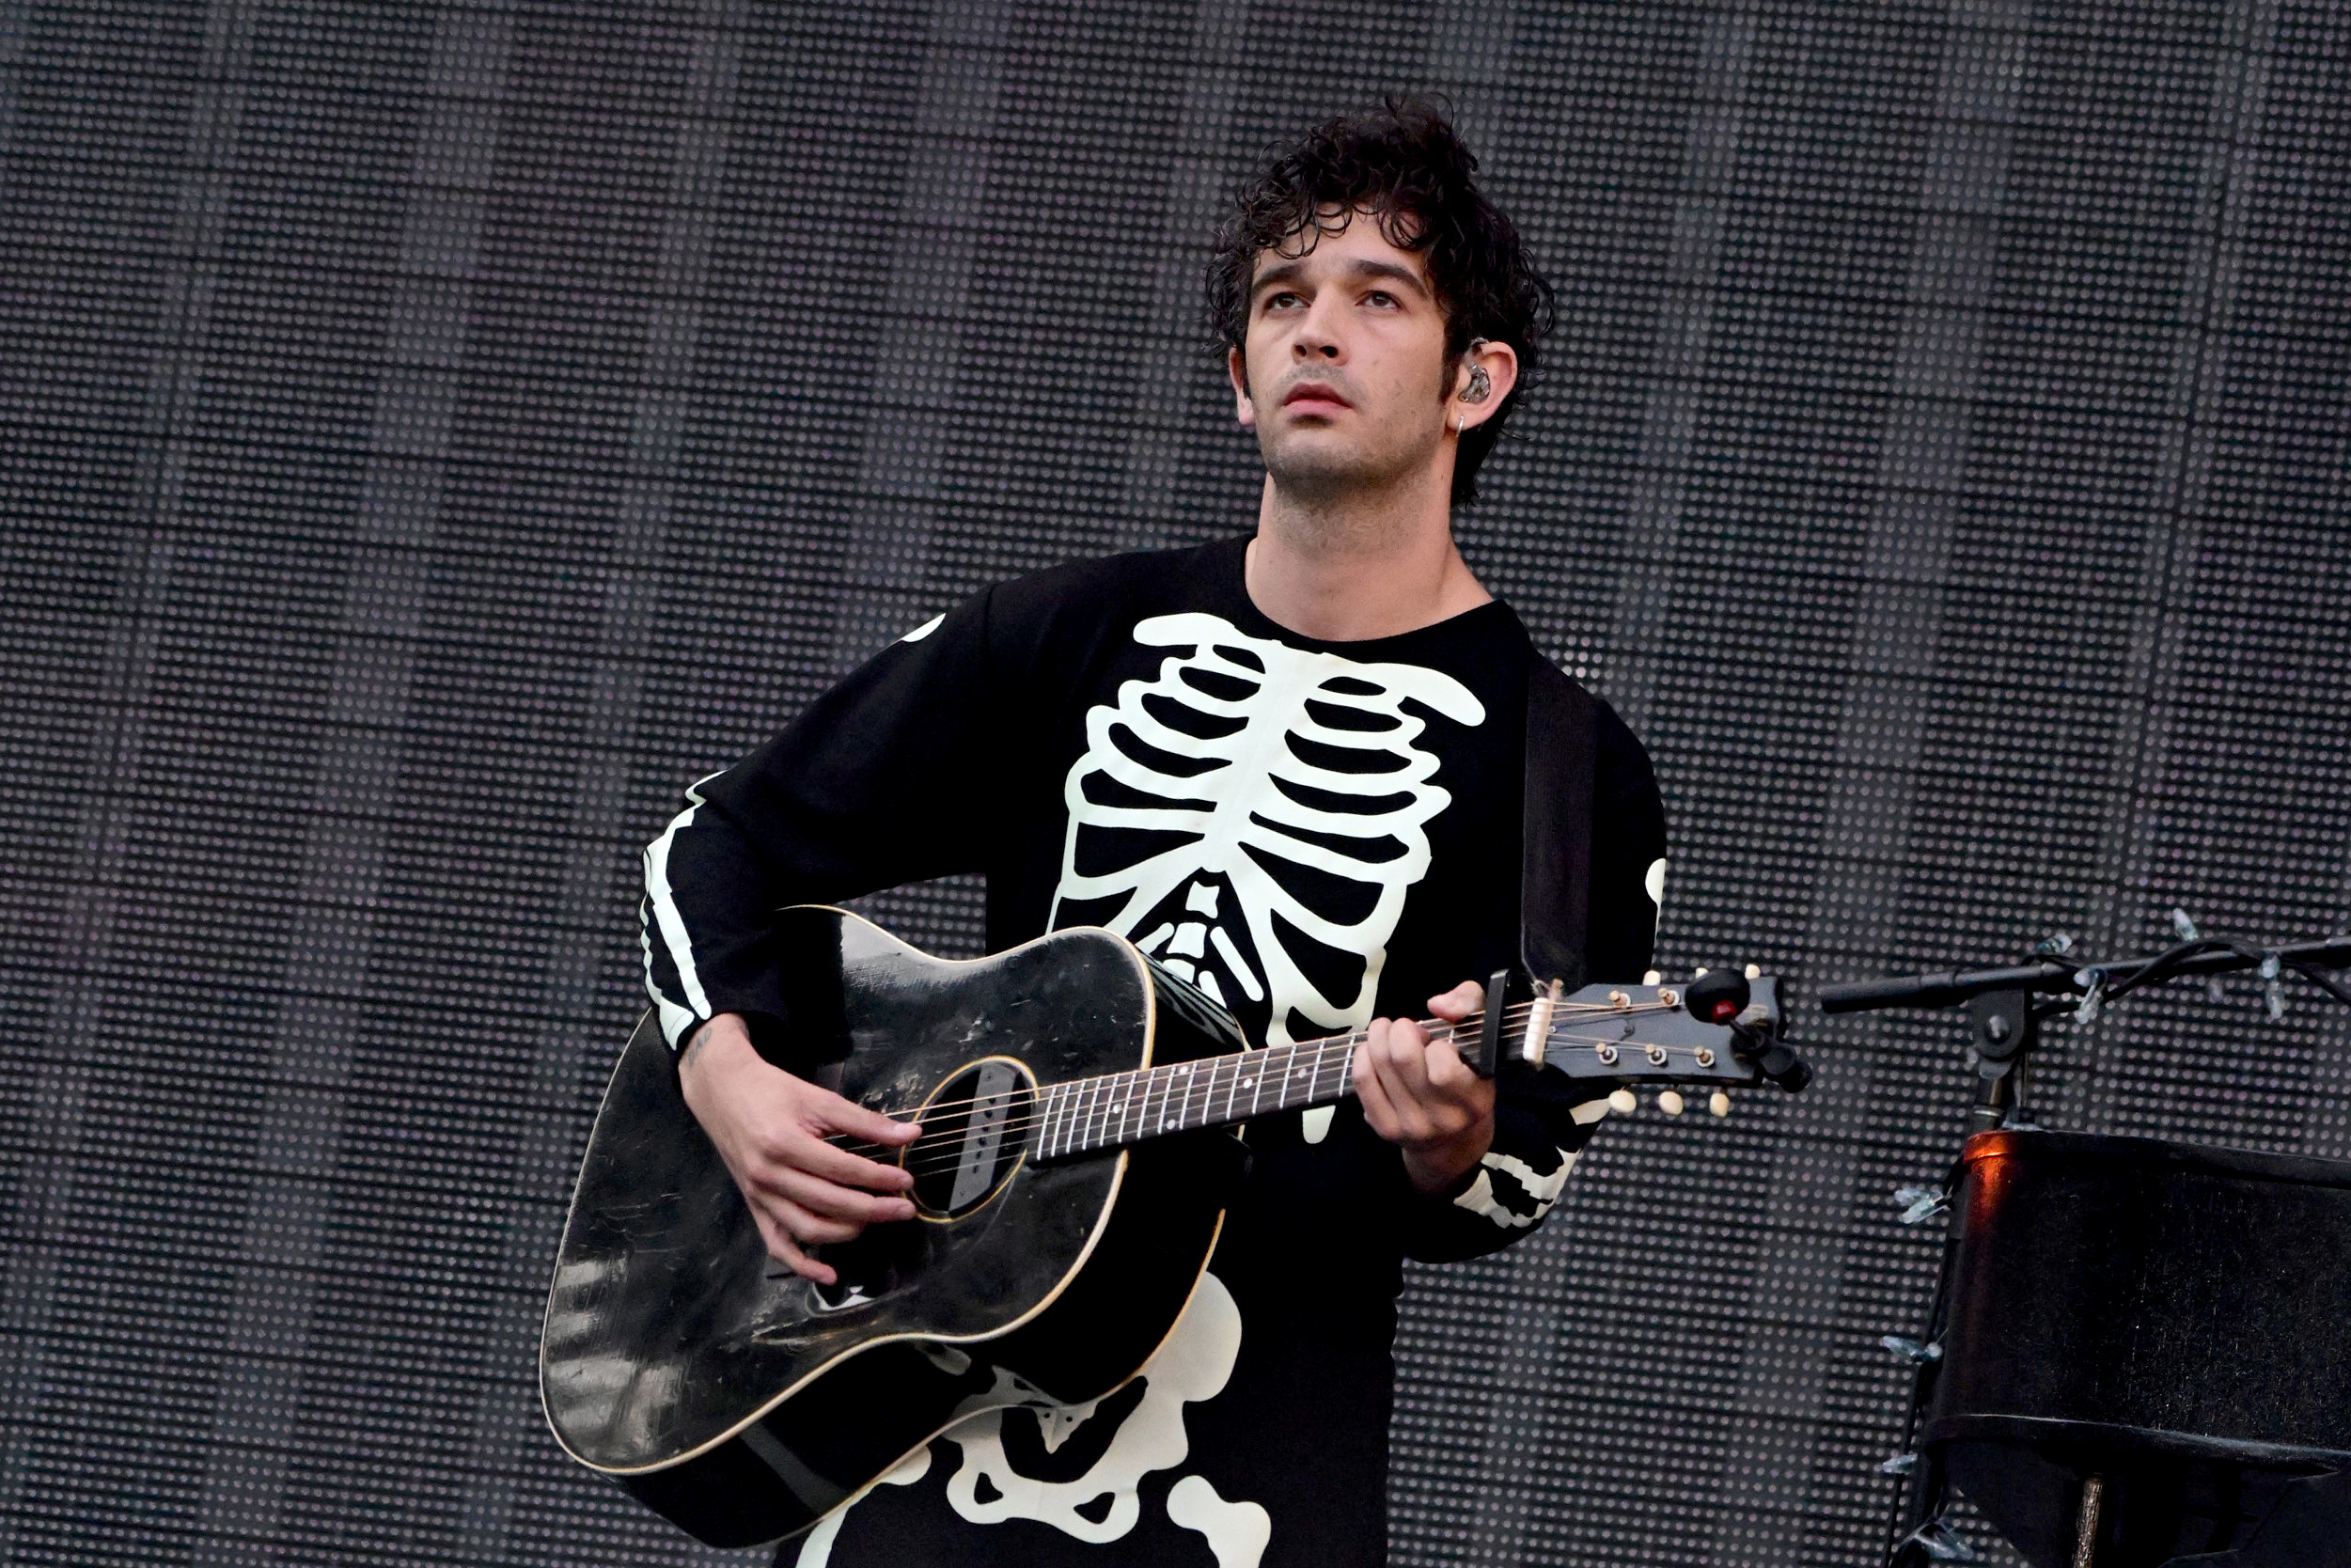 Matty Healy en escenario con guitarra y camiseta con estampado de esqueleto